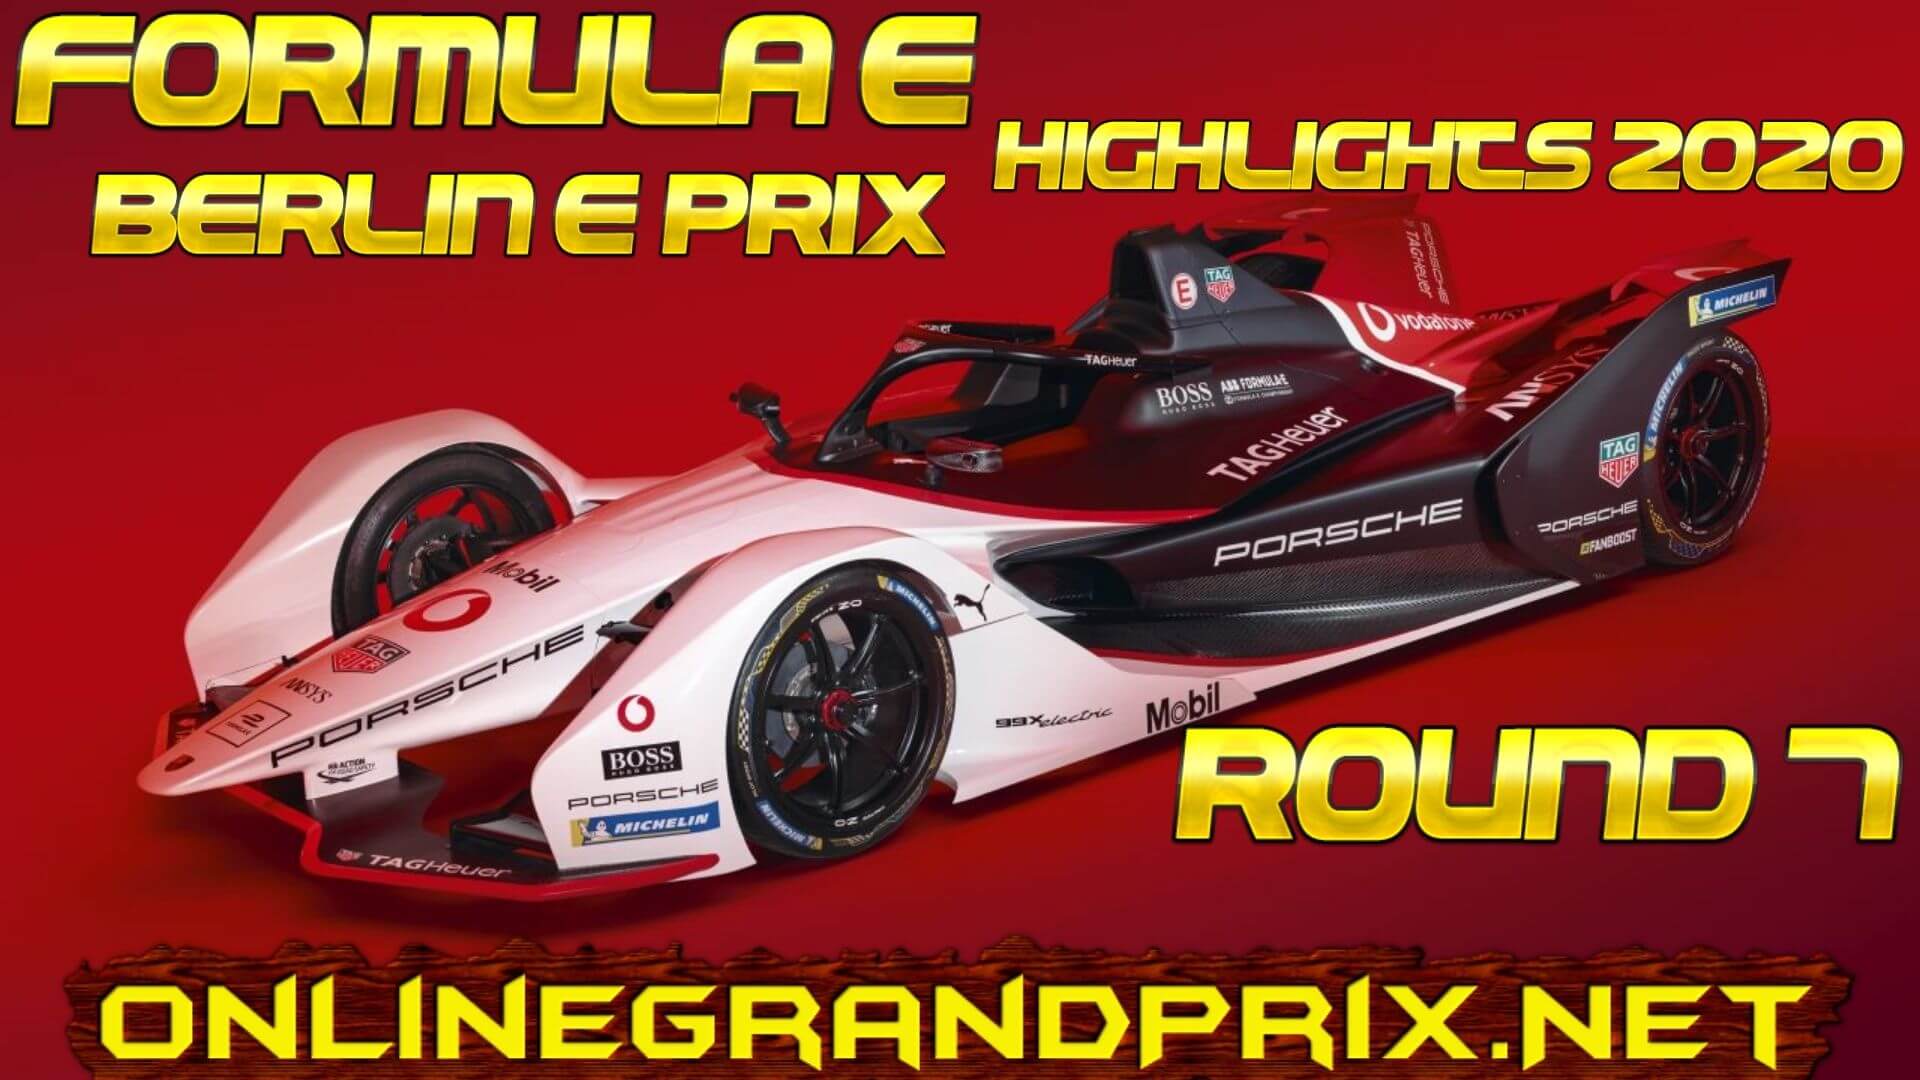 Berlin E Prix Formula E Highlights 2020 Round 7